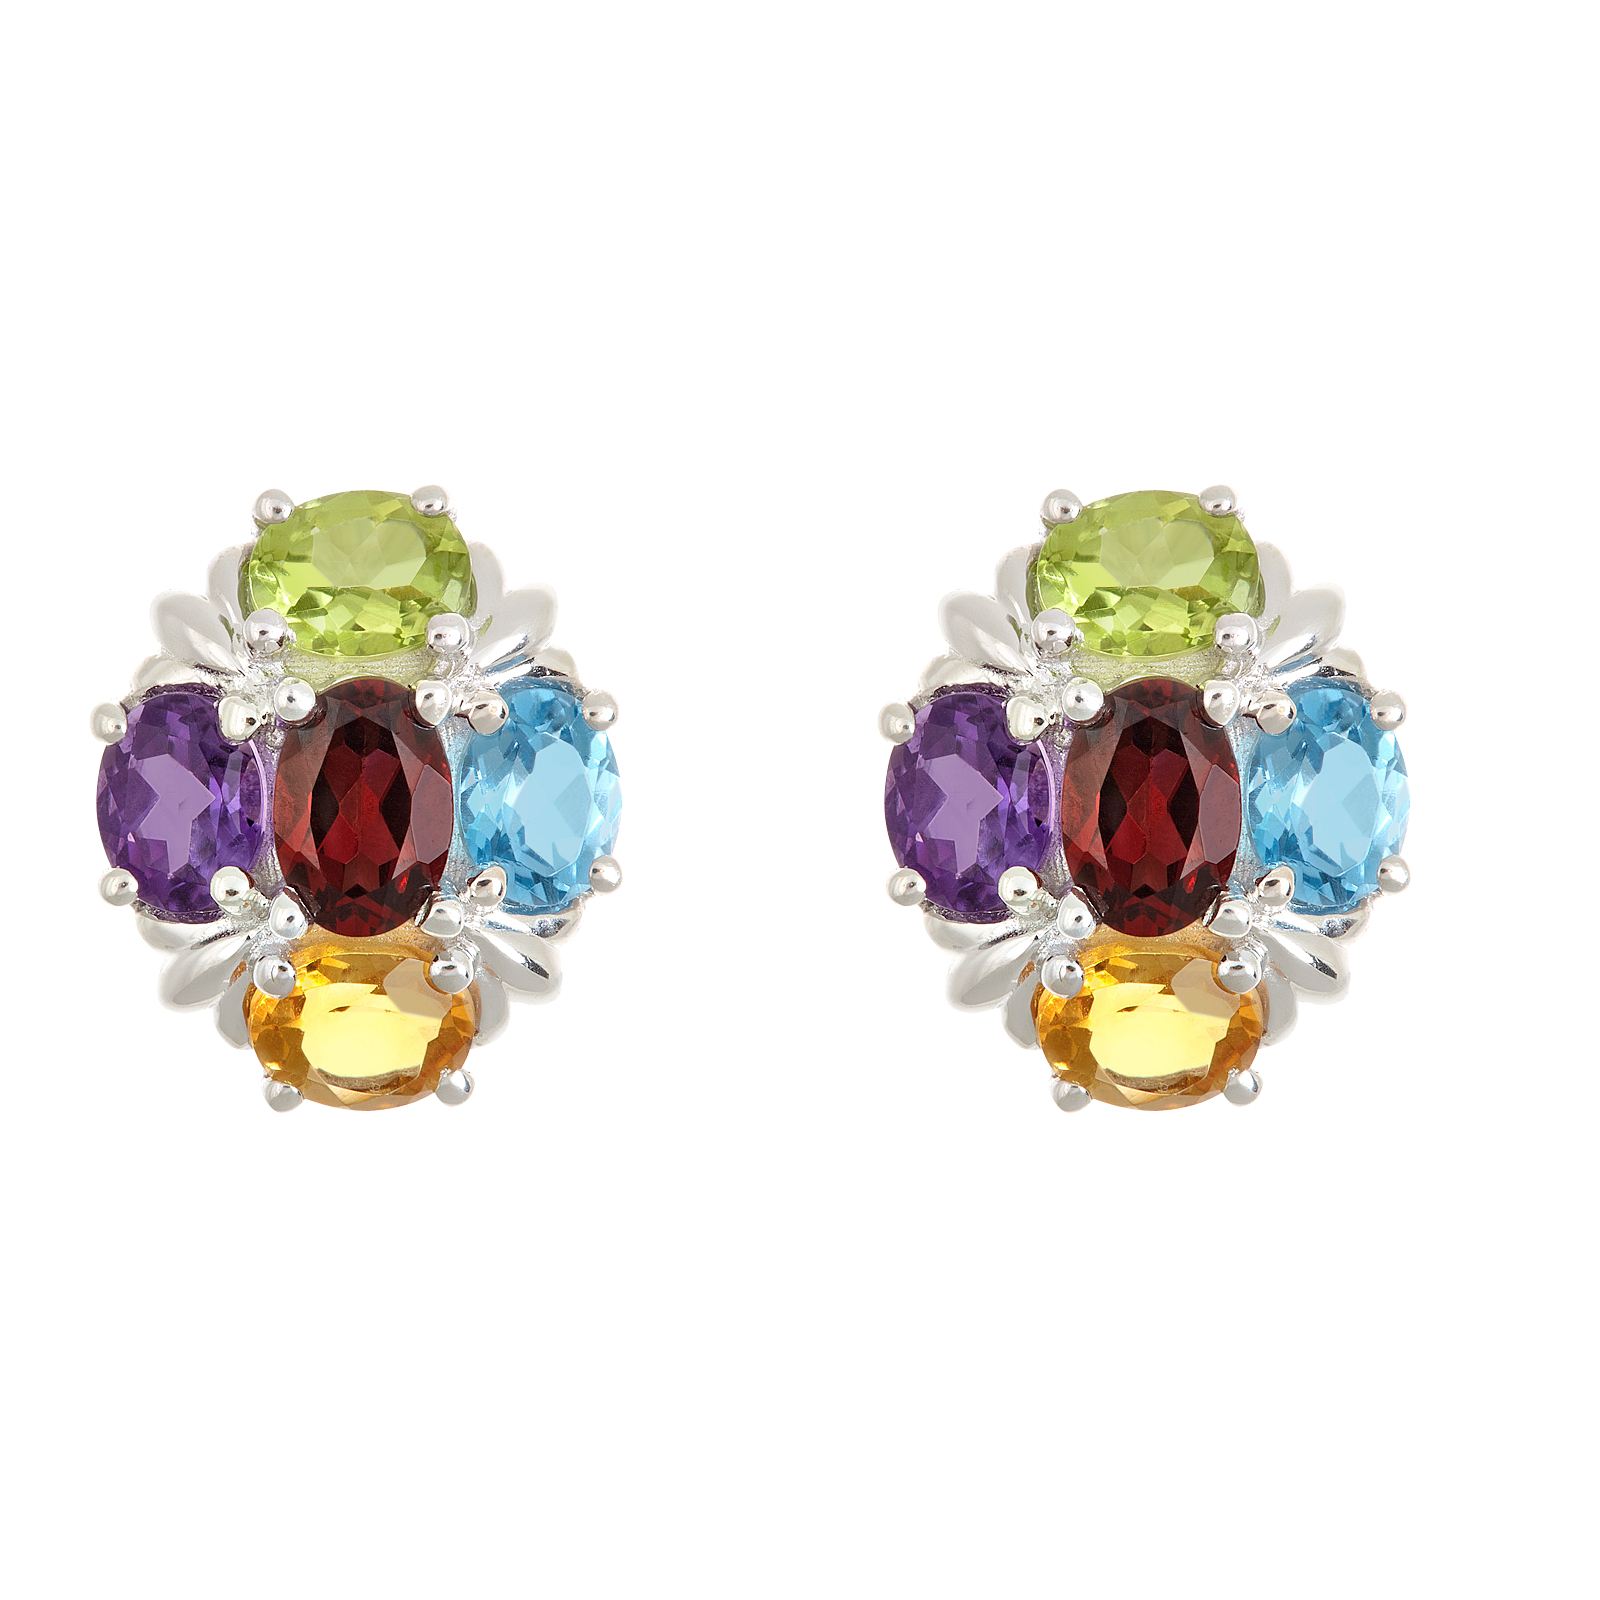 Ladies Sterling Silver Multi-Colored Gemstone Cluster Earrings